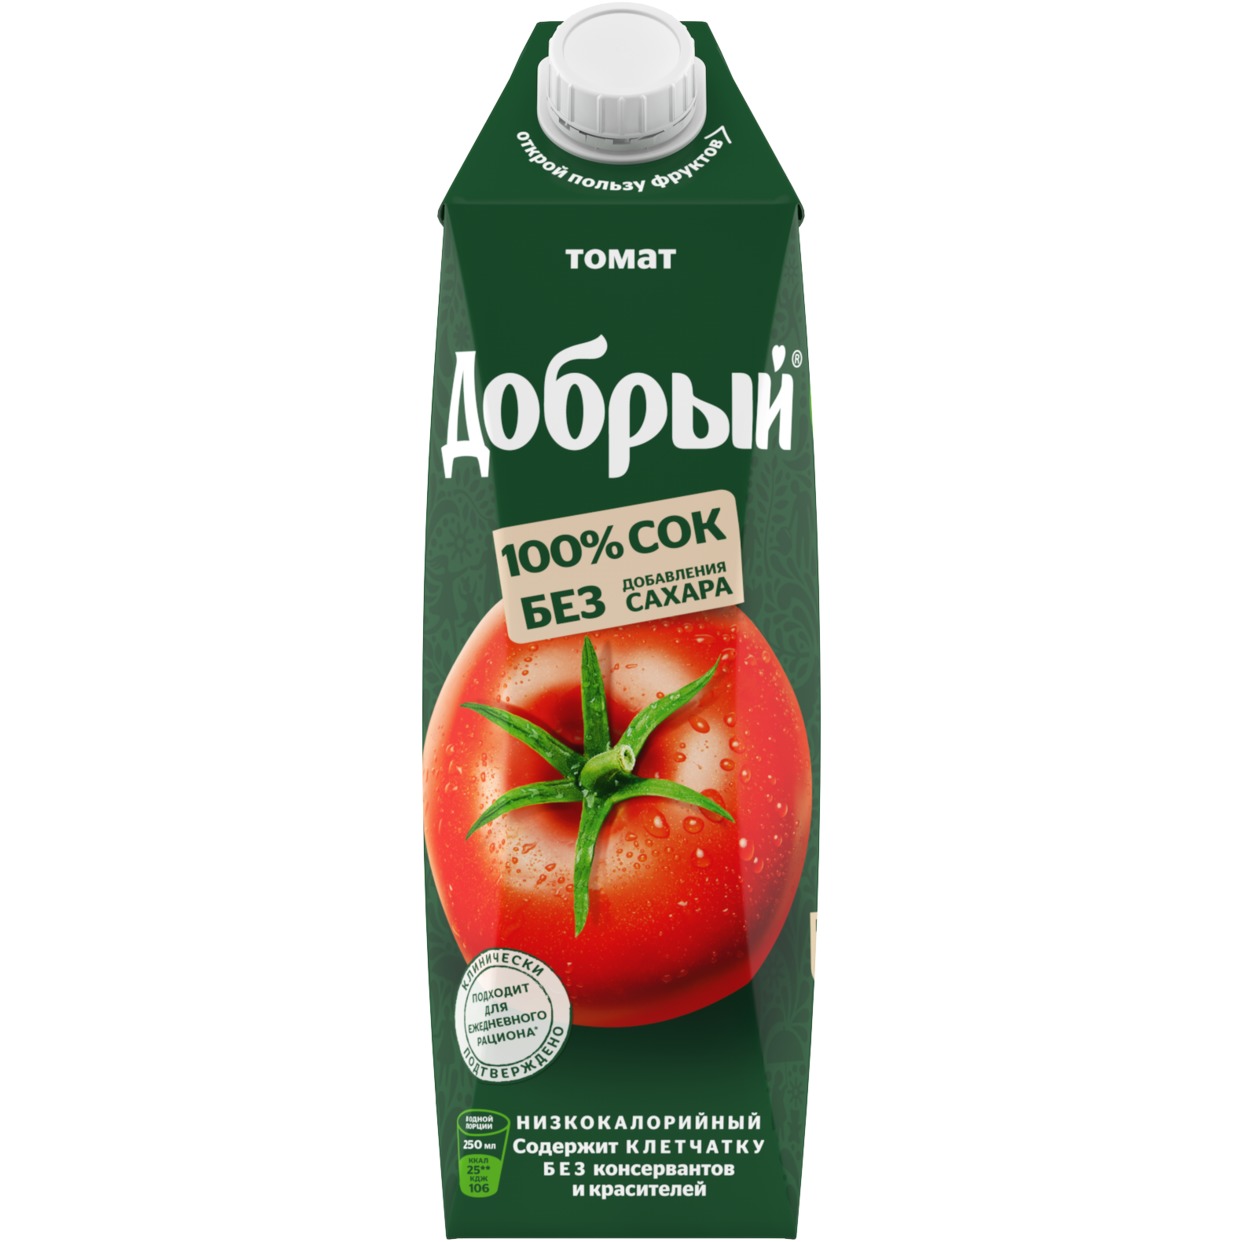 Сок ДОБРЫЙ томатный 1л по акции в Пятерочке